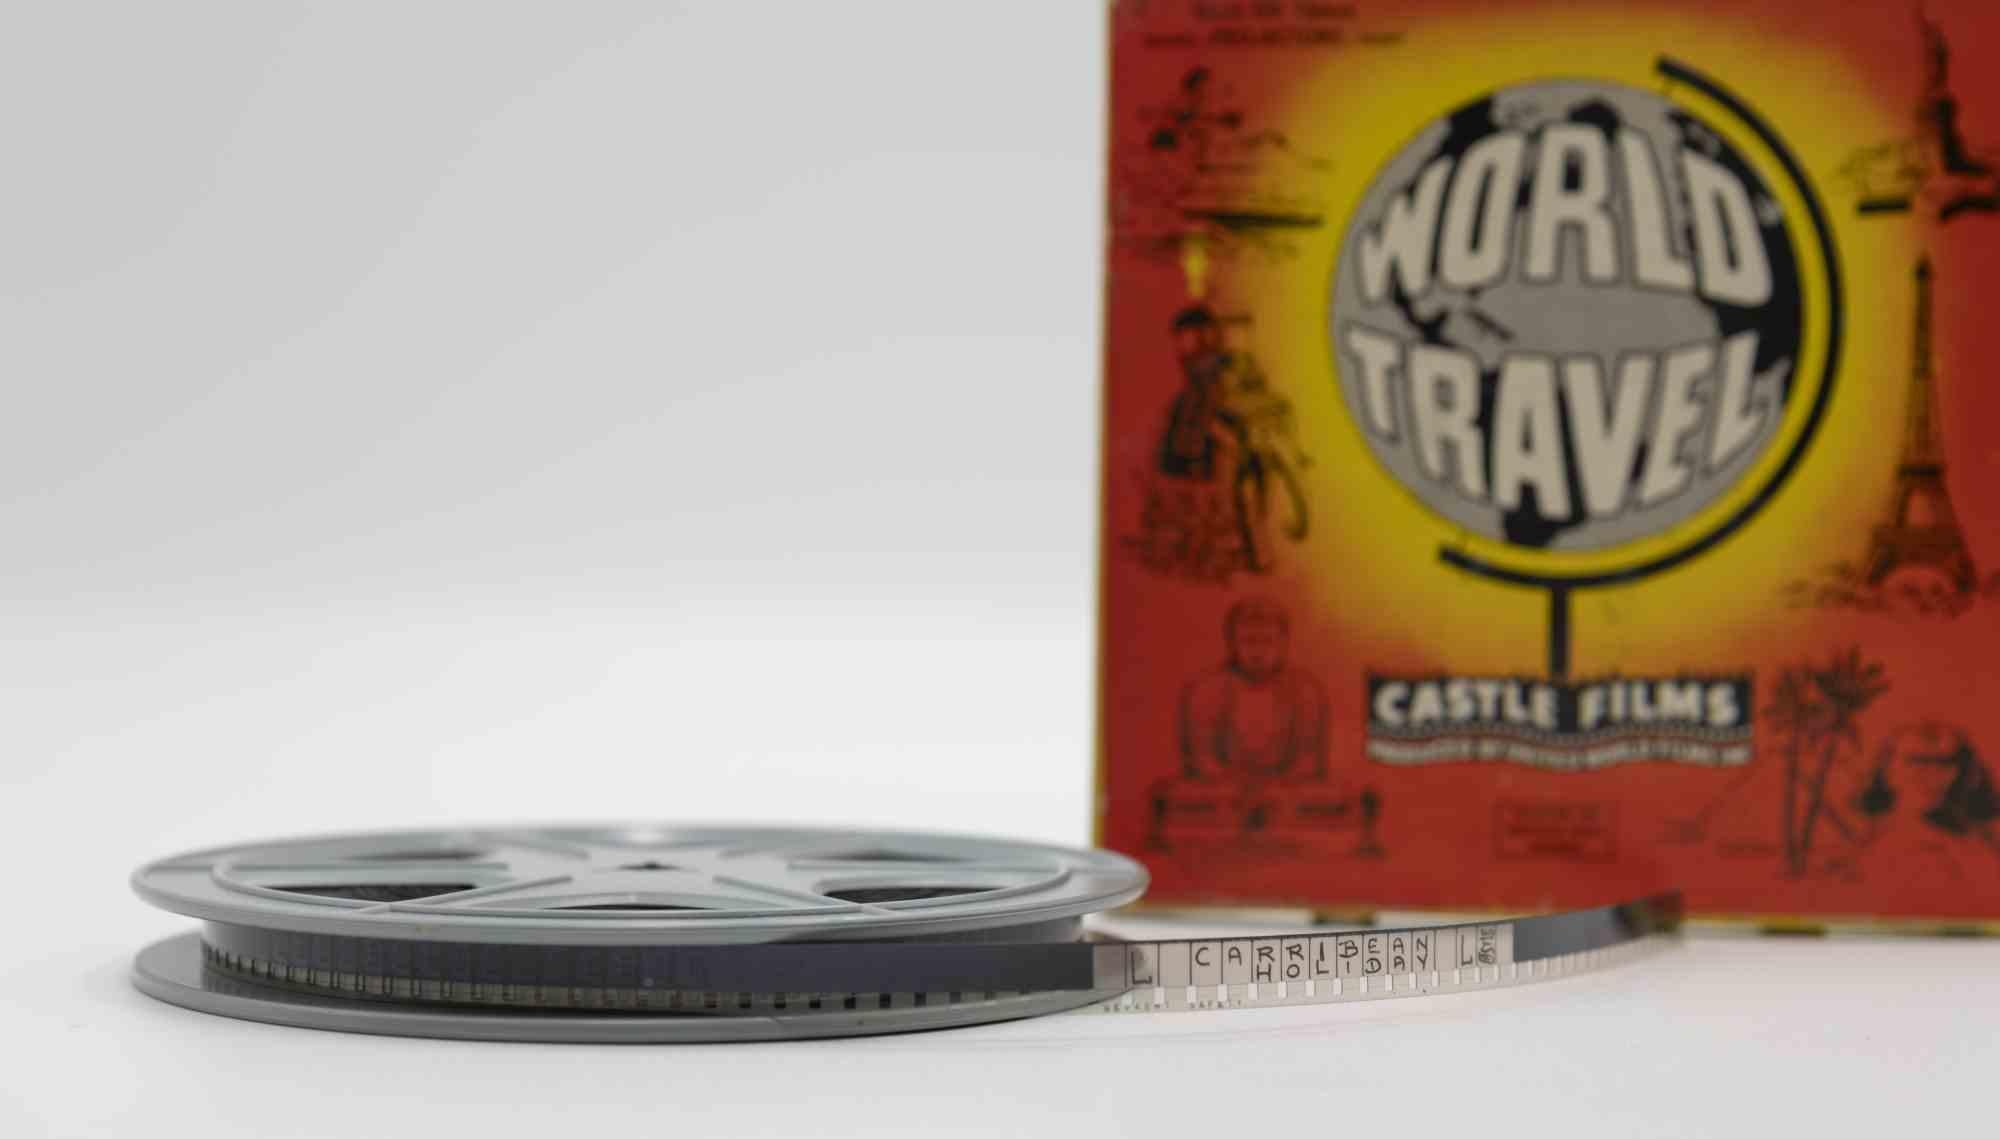 Weltreise ist ein Originalfilm aus den 1960er Jahren.

Gesamtausgabe, Castle-Filme.

Sie enthält die Originalverpackung.

8 mm.

Gute Bedingungen. 